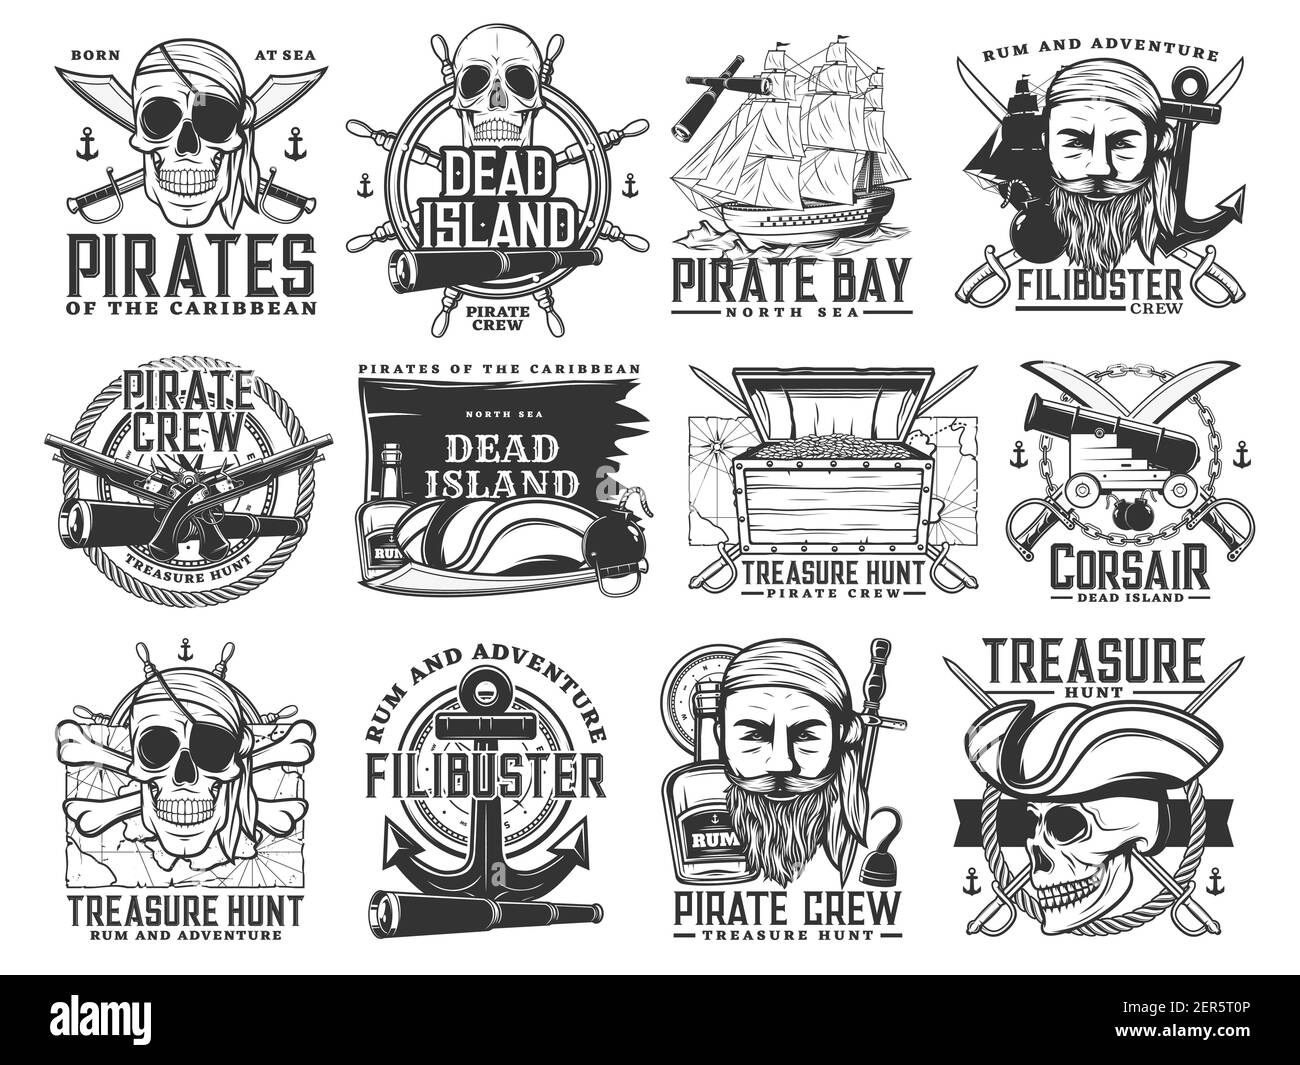 Piraten-Ikonen, Vektor Jolly Roger Schädel oder Skelett Köpfe, schwarze Flagge, Kapitän Tricorn Matrosenhut, gekreuzte Knochen, Schwerter oder Säbel und Anker mit Spion Stock Vektor